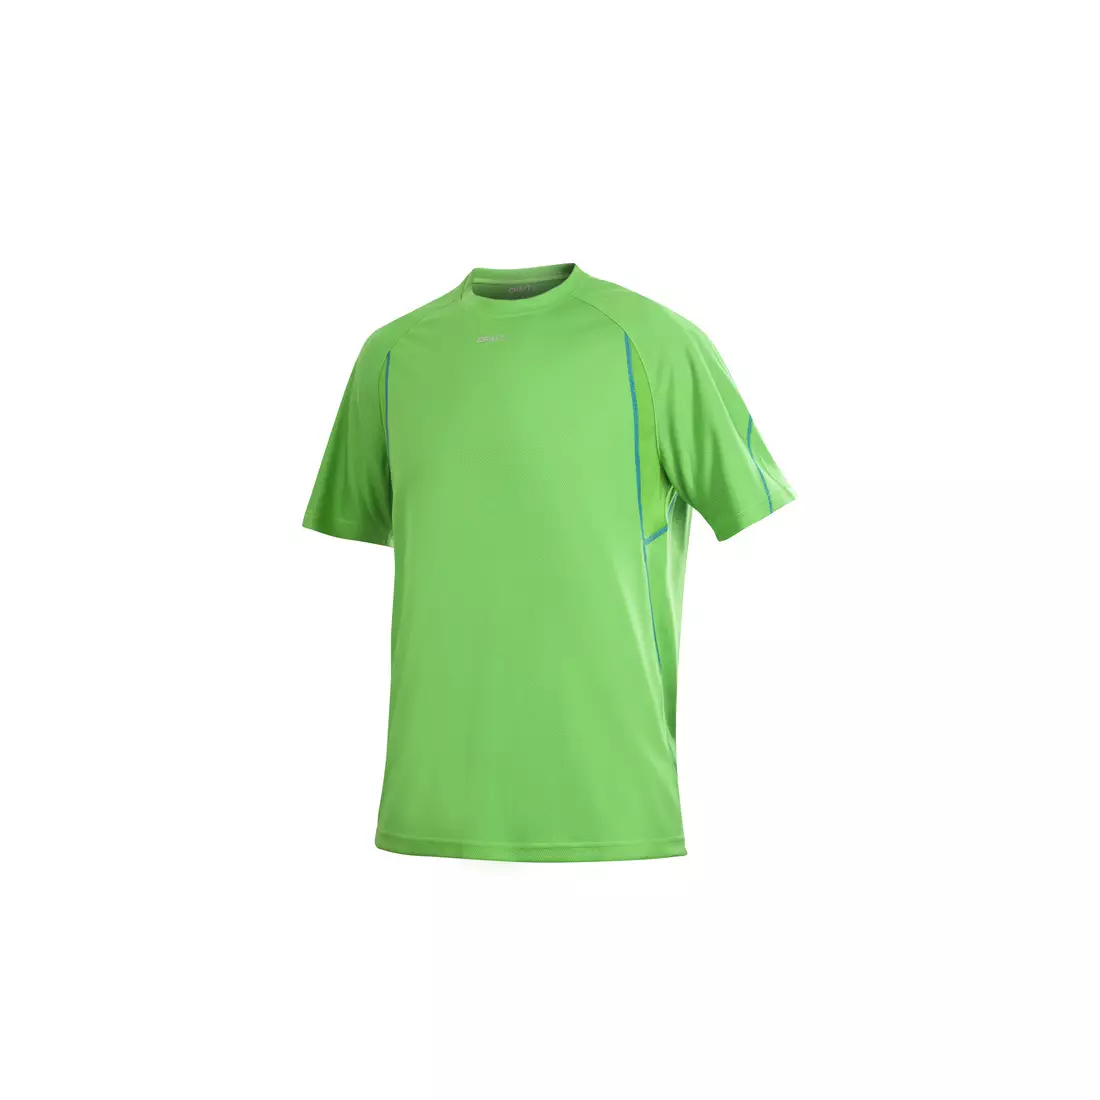 CRAFT ACTIVE RUN 1900655-2606 – Lauf-T-Shirt für Herren